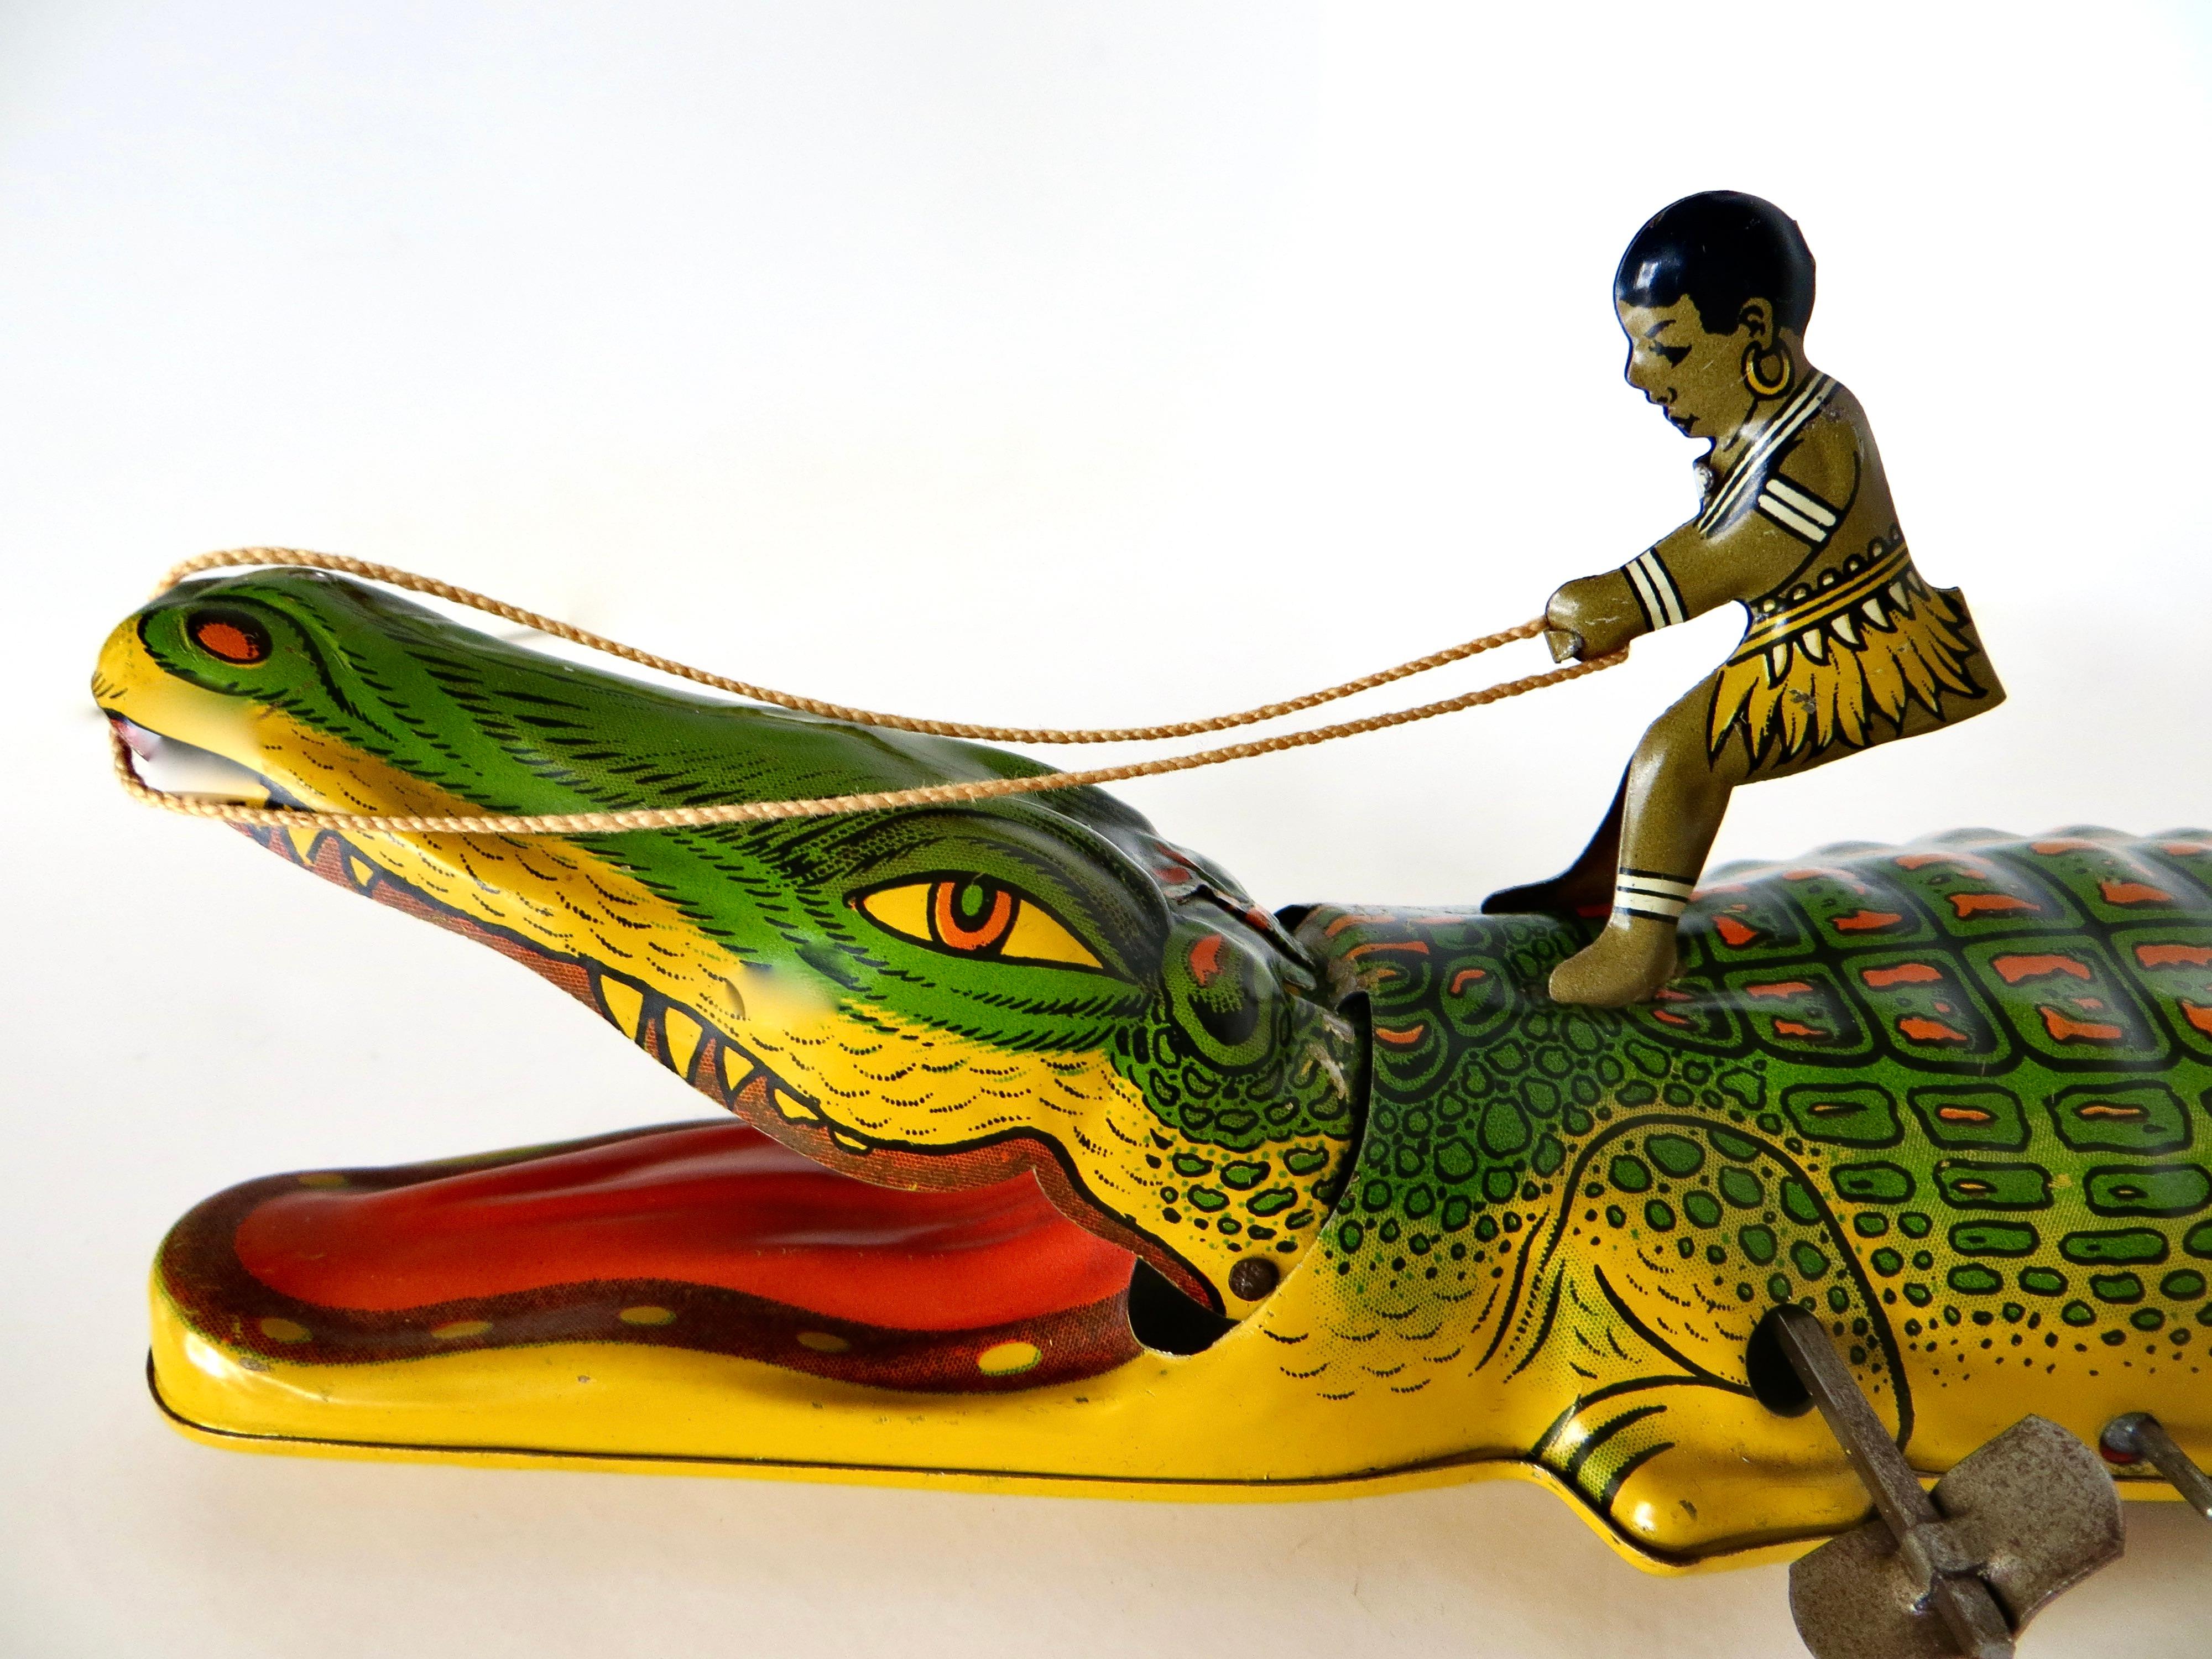 Dieses Vintage-Blechspielzeug, das um 1935 von der J. Chein Company in Harrison, New Jersey, hergestellt wurde, zeigt im aufgezogenen Zustand einen kleinen Jungen in Insulanerkleidung, der versucht, auf einem Alligator zu reiten, der über den Boden